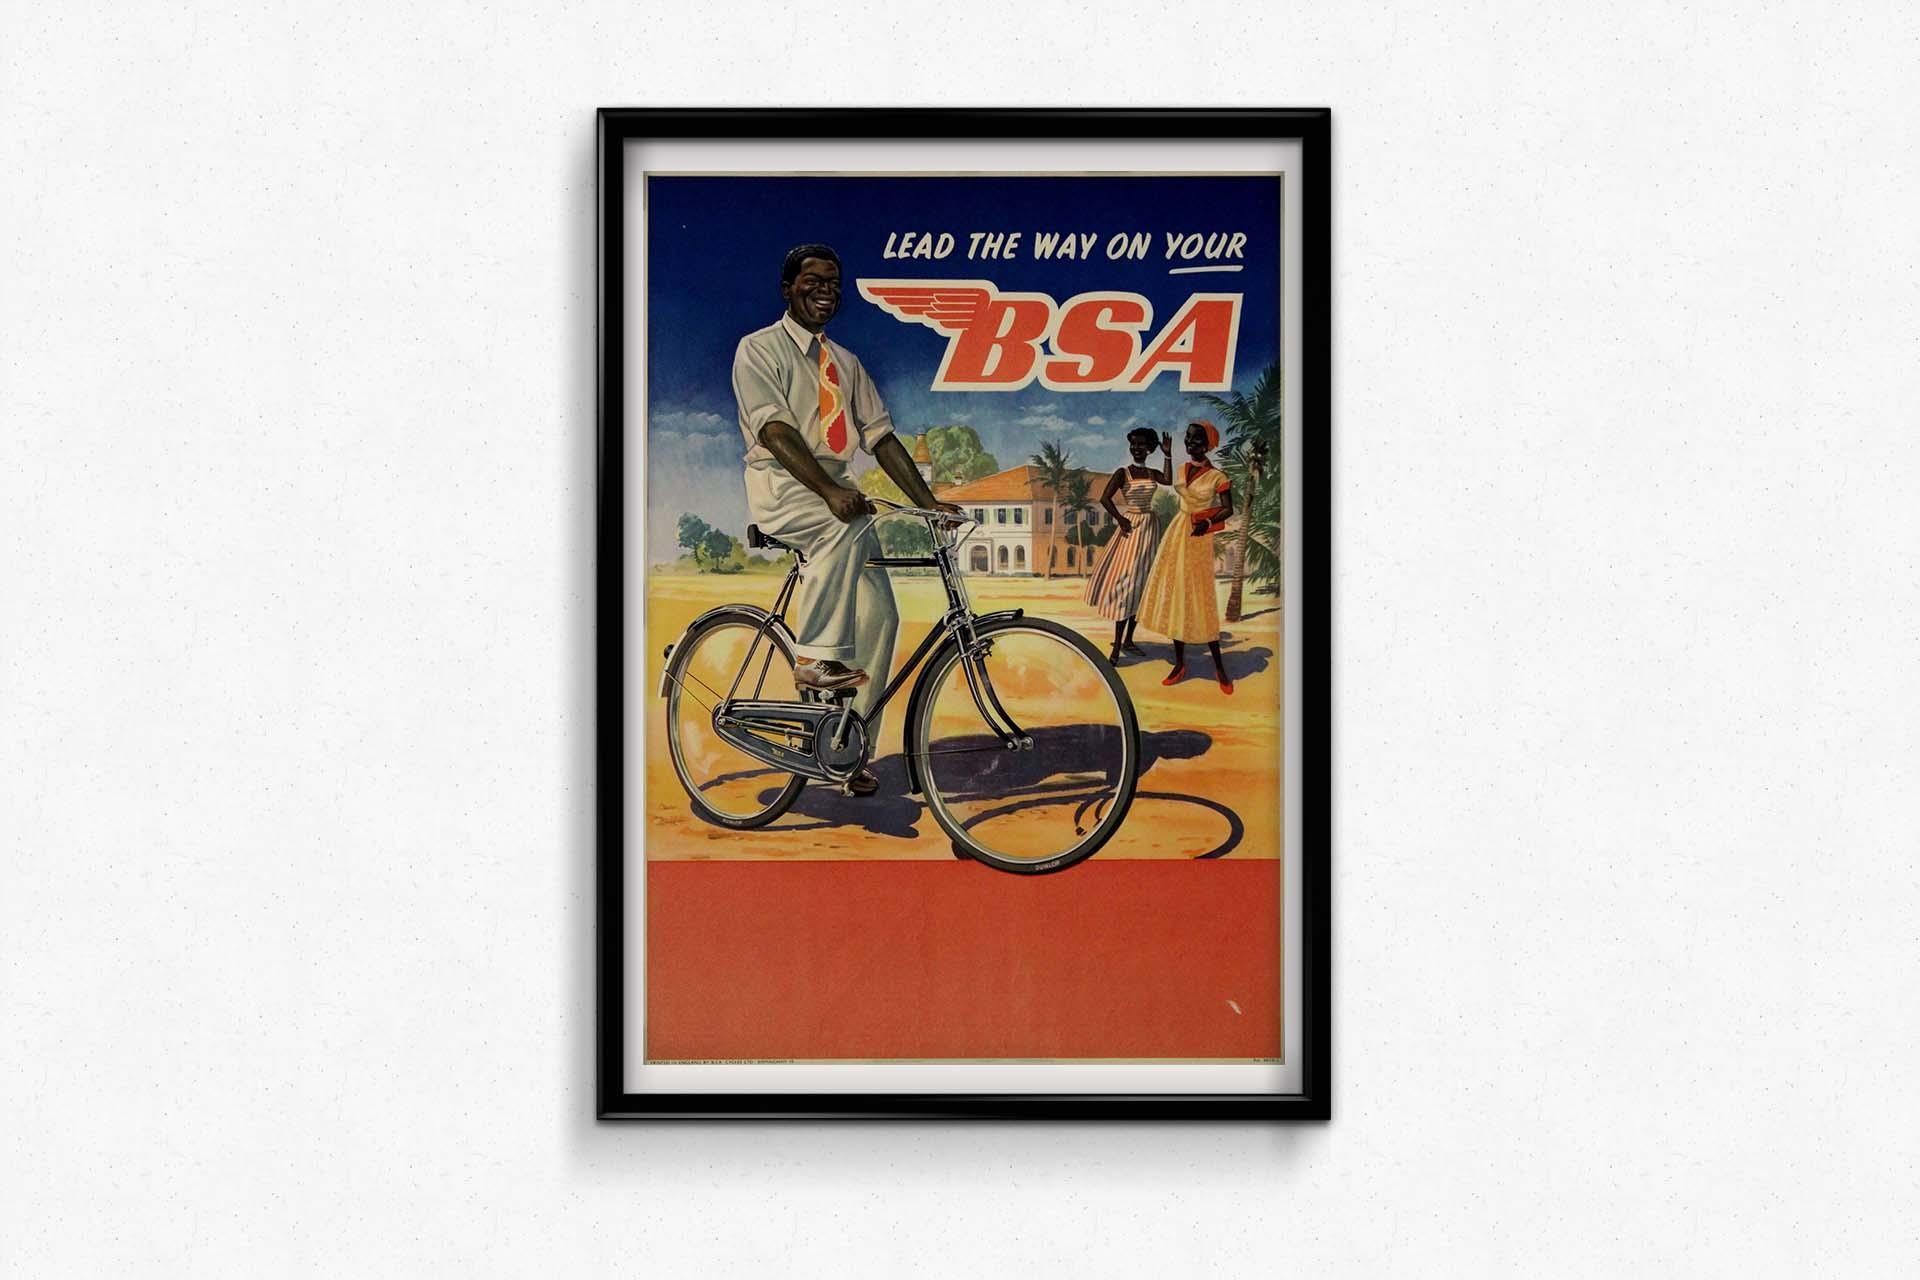 Das Originalplakat für BSA-Fahrräder von ca. 1940 mit dem fesselnden Slogan 